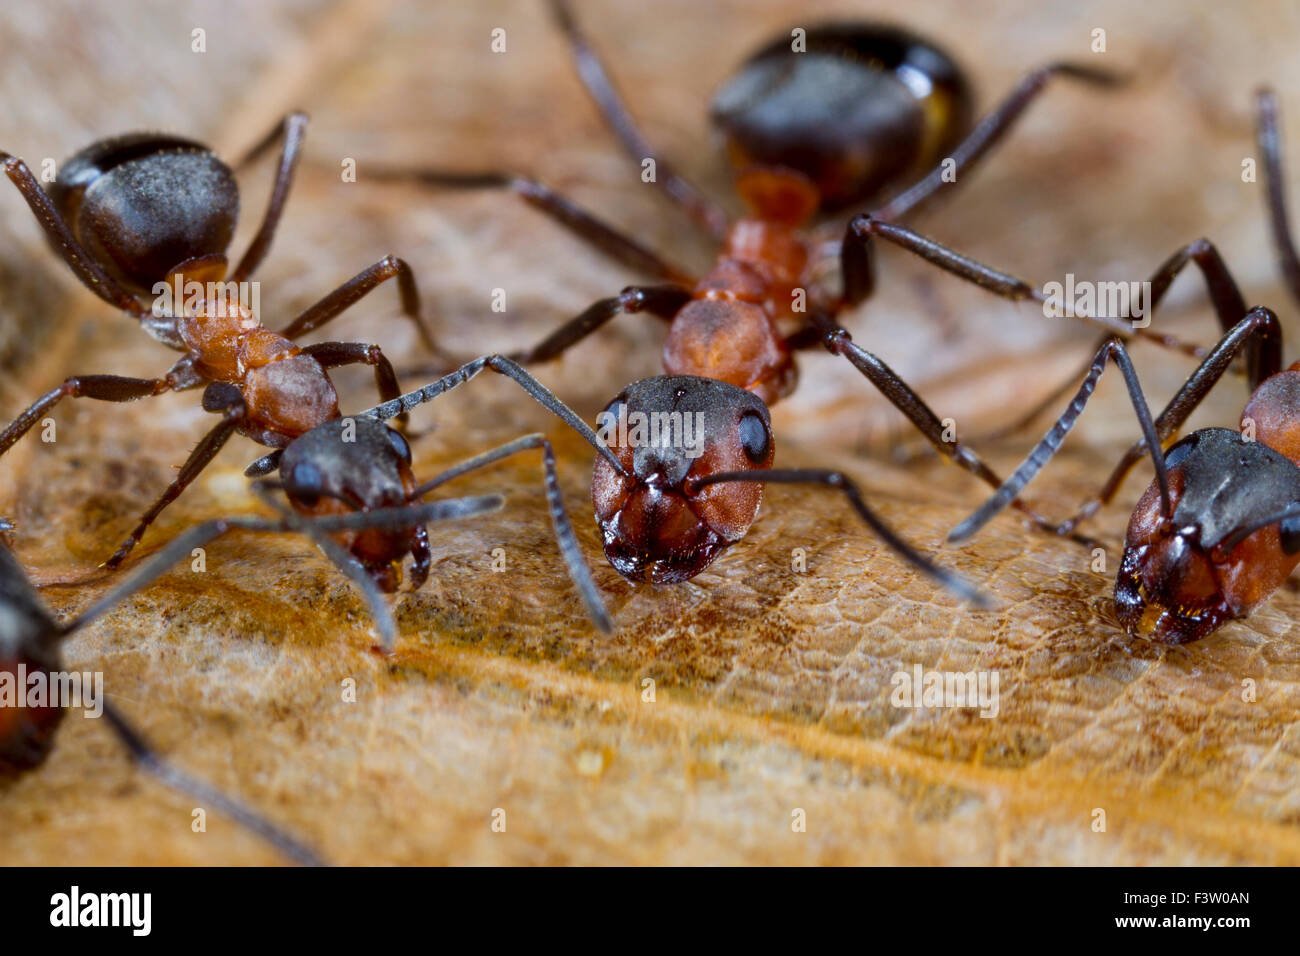 Red les fourmis des bois (Formica rufa) travailleurs adultes de boire de l'eau sucre appât. Shropshire, Angleterre. Avril. Banque D'Images